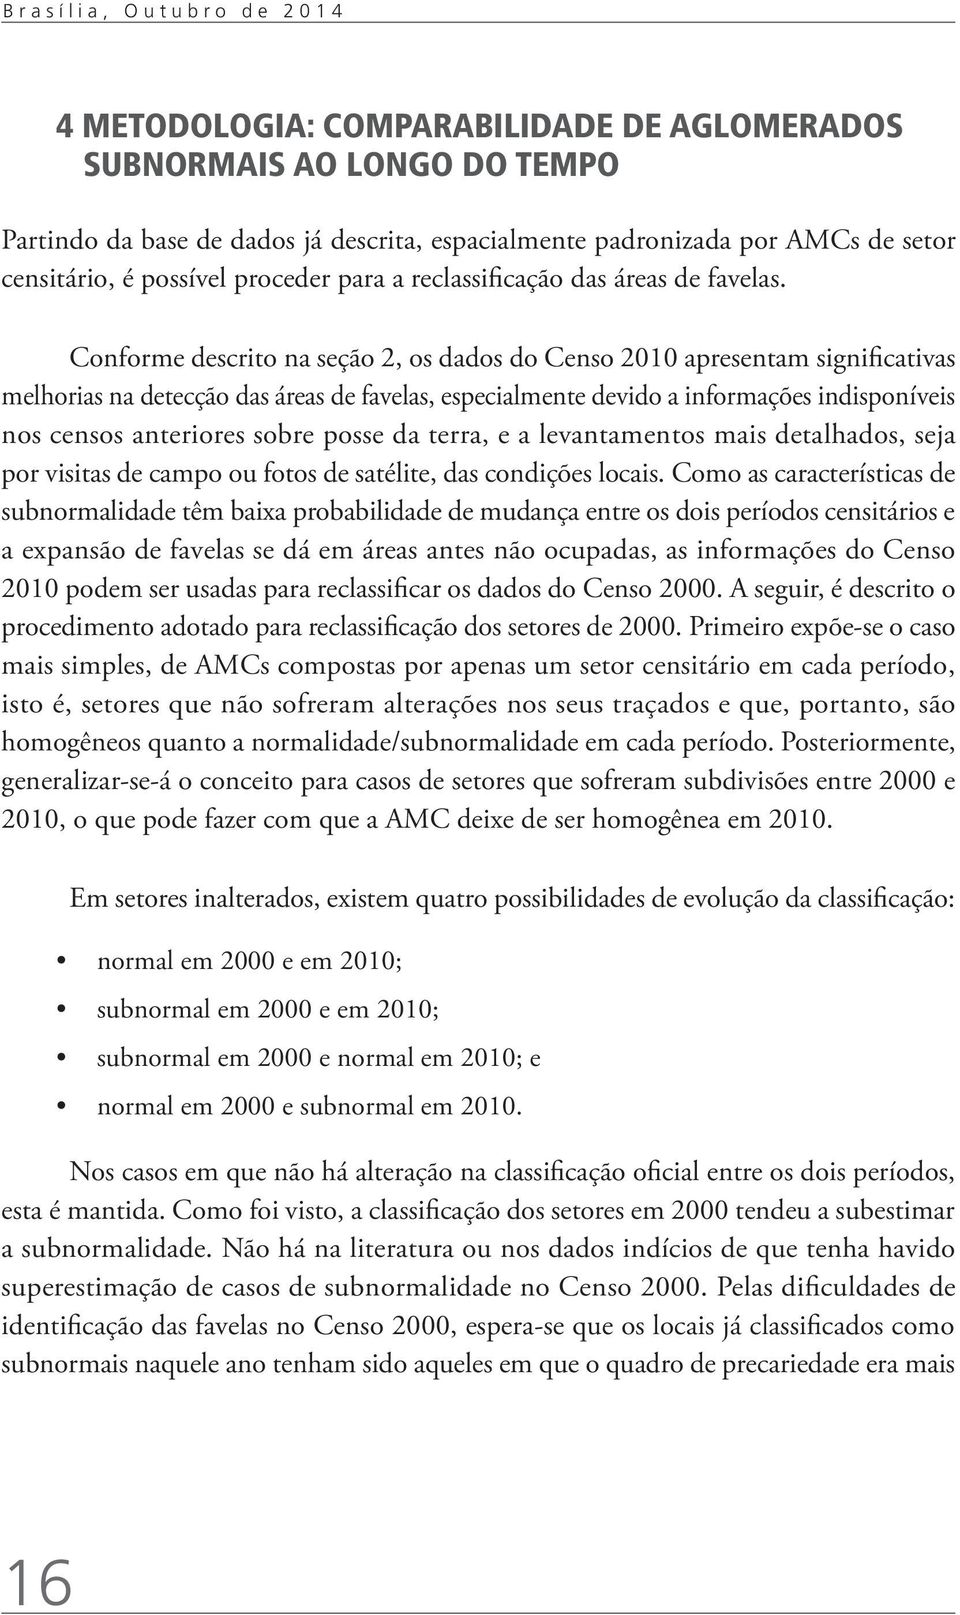 Conforme descrito na seção 2, os dados do Censo 2010 apresentam significativas melhorias na detecção das áreas de favelas, especialmente devido a informações indisponíveis nos censos anteriores sobre